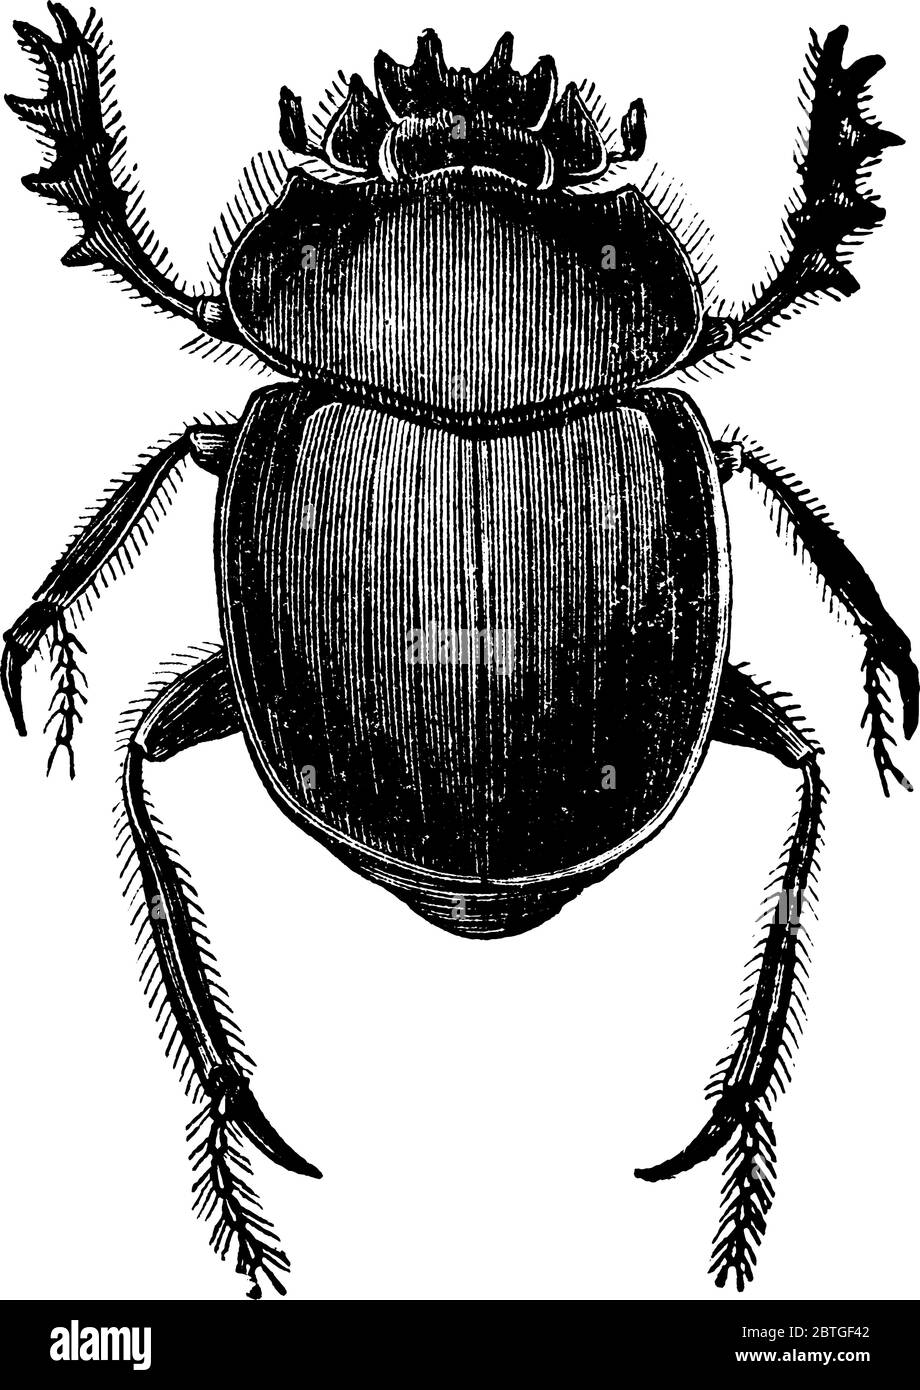 Représentation typique du dendroctone, un insecte de la famille des Scarabaeidae. Cet insecte était une icône sacrée pour les Égyptiens, ligne de drawin vintage Illustration de Vecteur